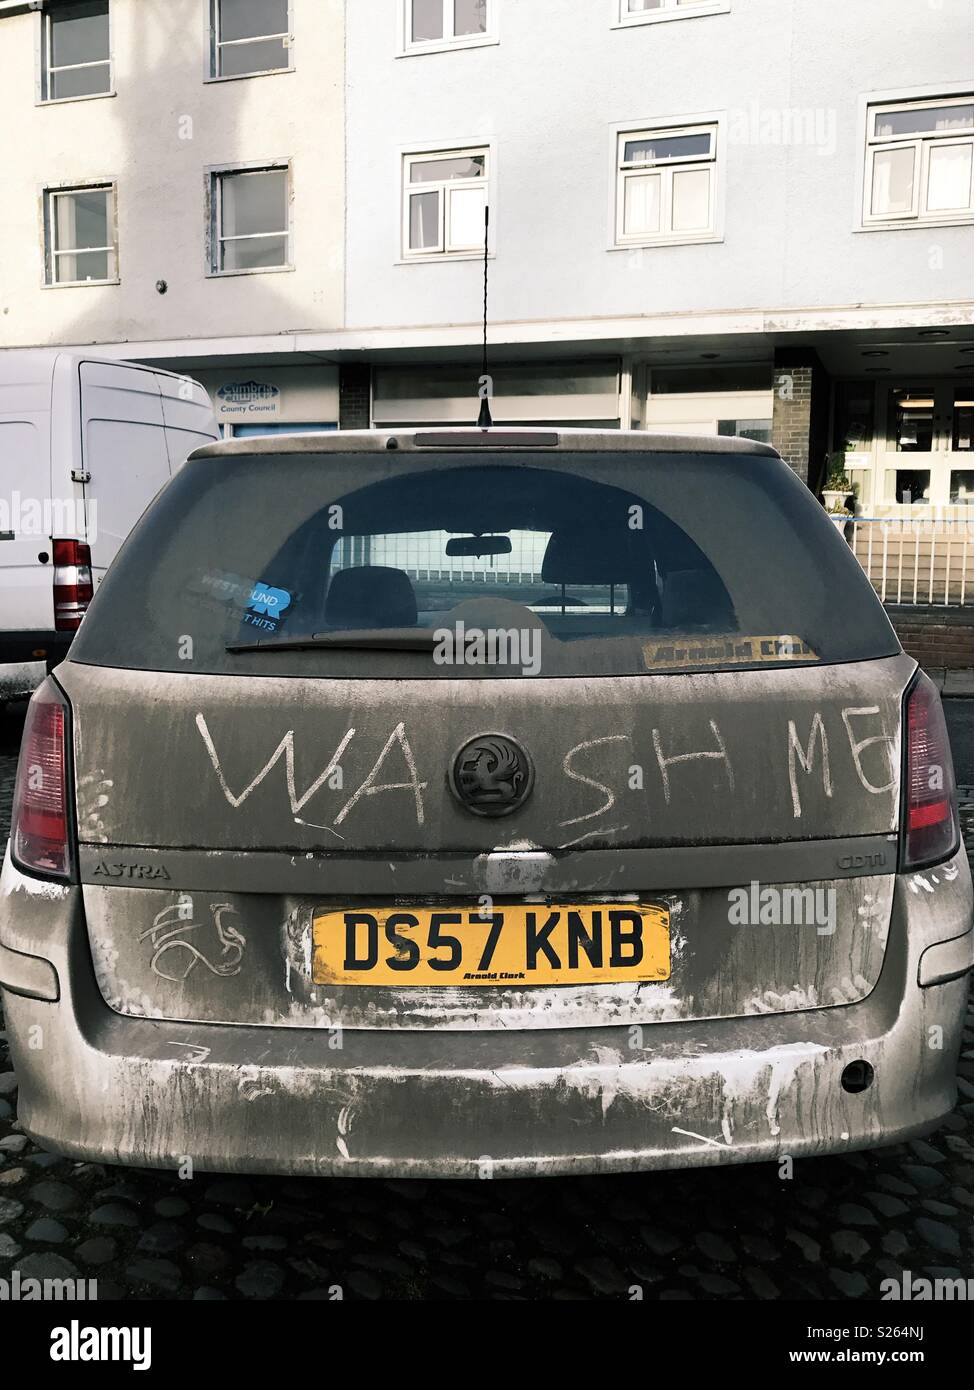 Una macchina sporca in Northumberland, Inghilterra. Qualcuno ha scritto di me di lavaggio nello sporco che copre la parte posteriore del veicolo. Foto Stock